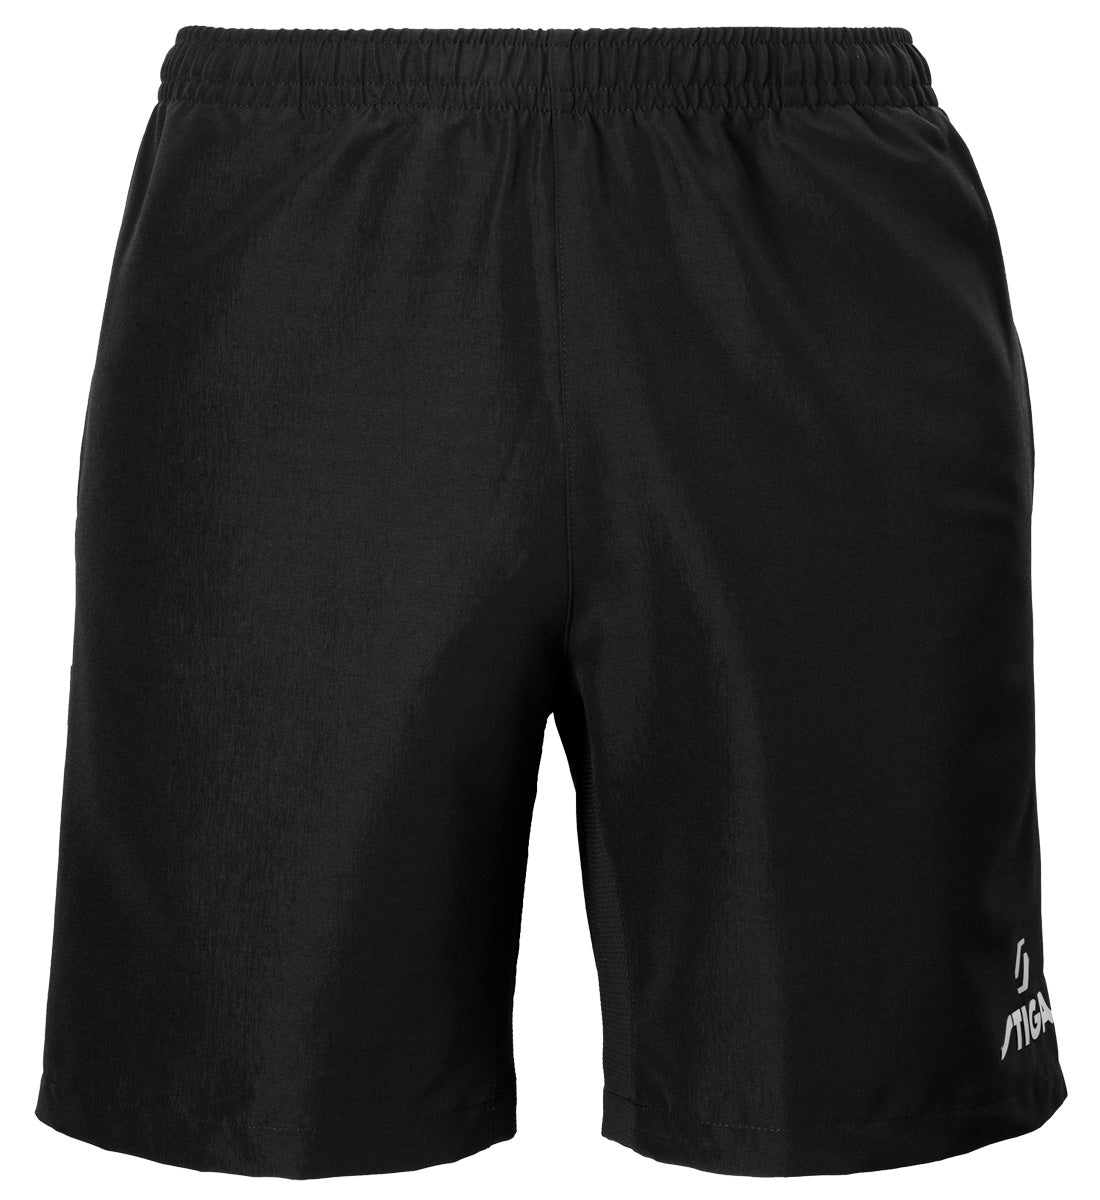 STIGA Pro Shorts Black